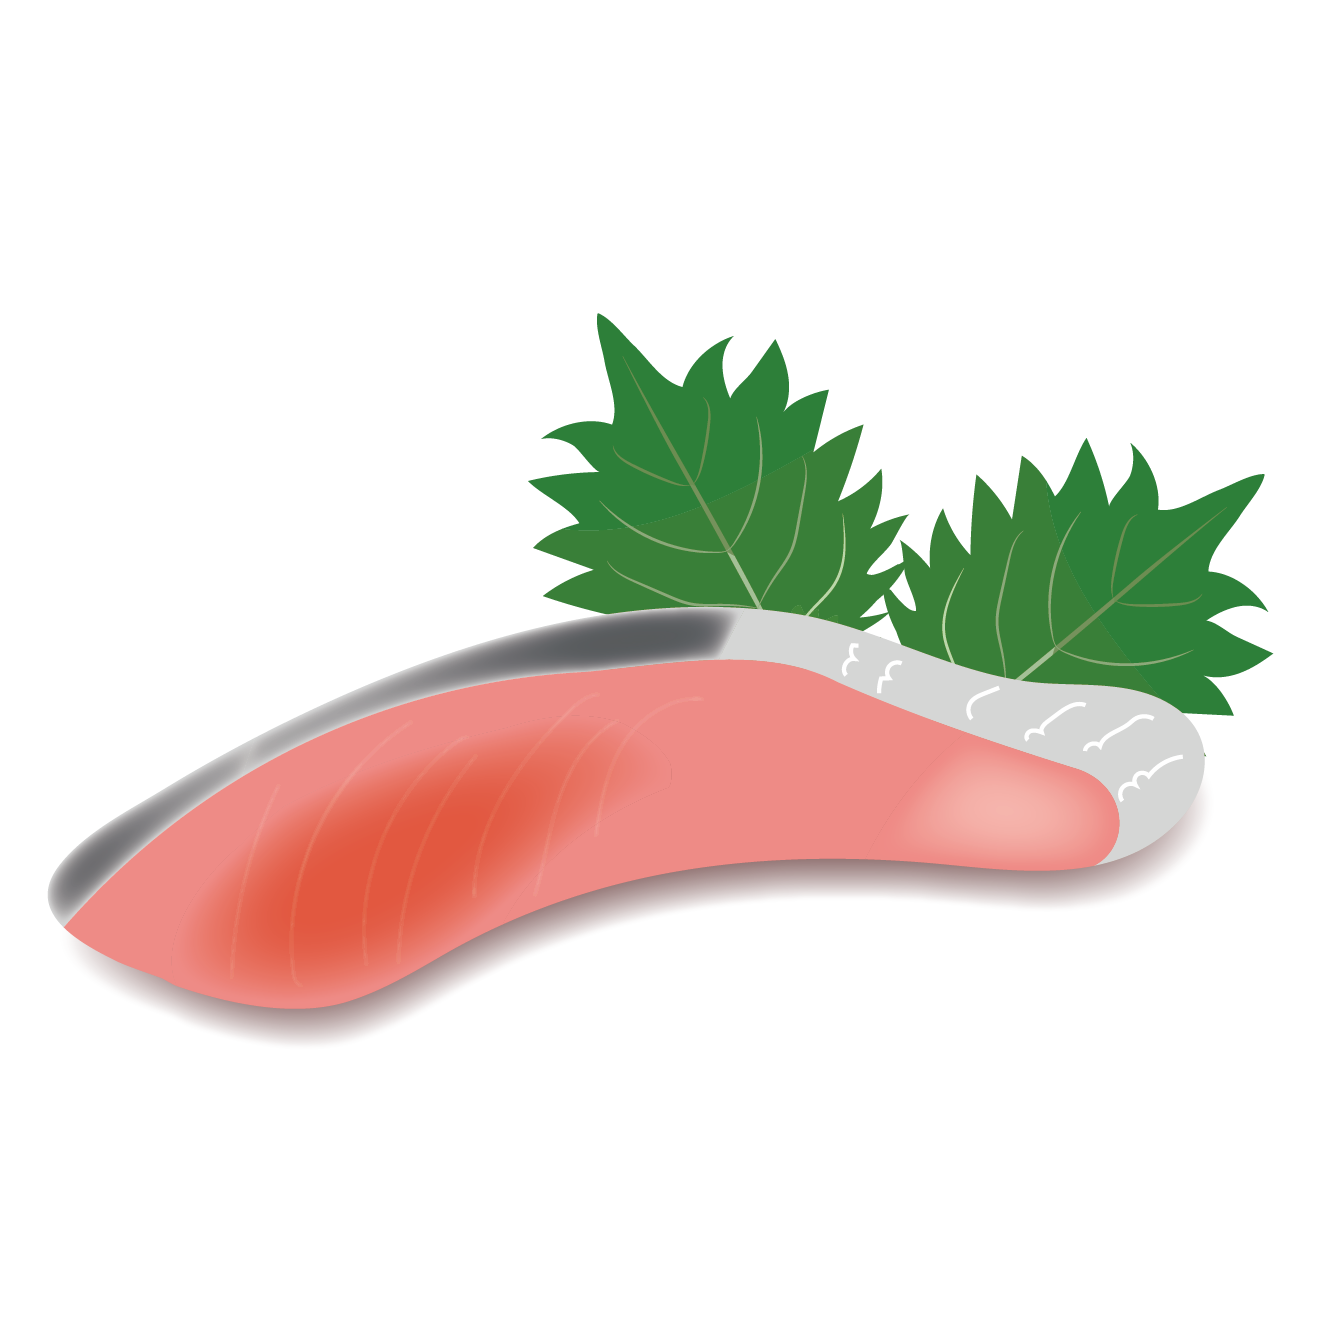 鮭 サケ シャケ の切身のイラスト 魚 商用フリー 無料 の